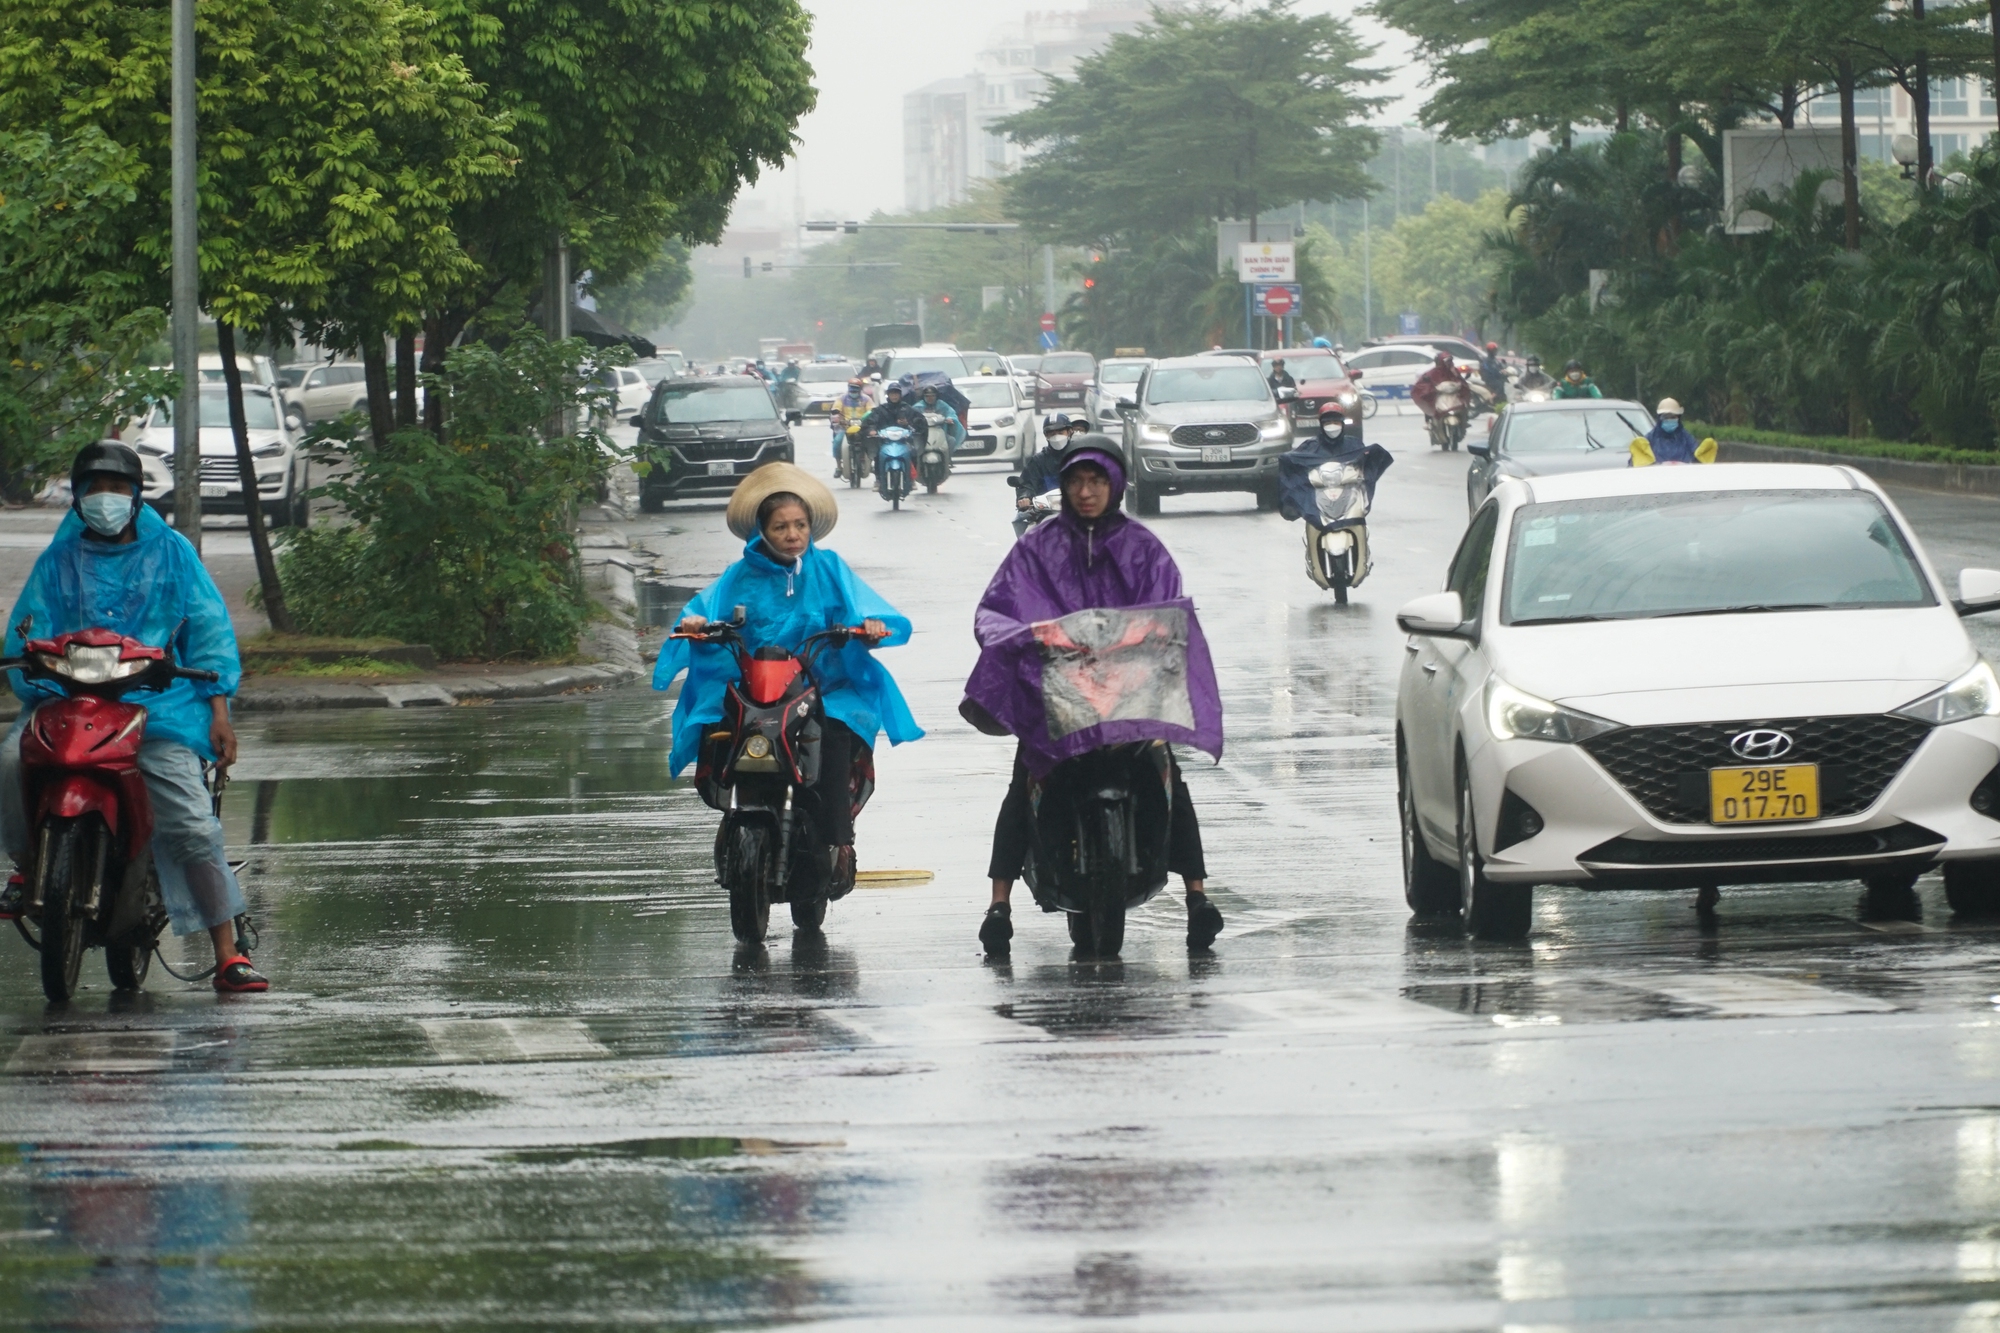 Ảnh, clip: Người Hà Nội hứng trọn mưa, rét, tắc đường trong đợt lạnh nhất từ đầu mùa - Ảnh 11.